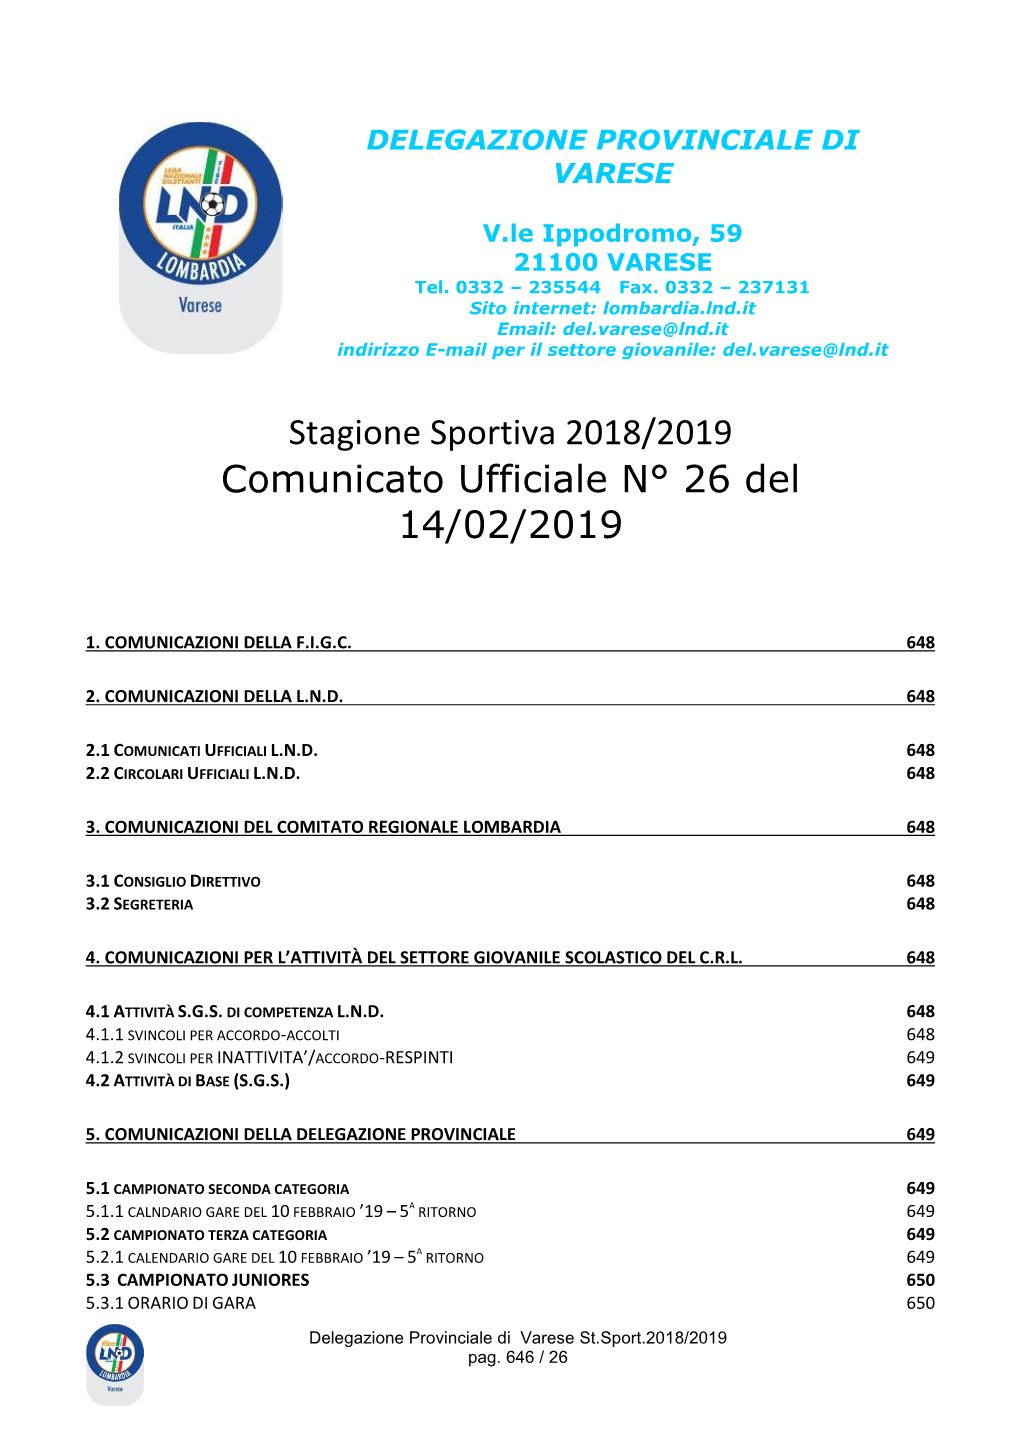 Stagione Sportiva 2018/2019 Comunicato Ufficiale N° 26 Del 14/02/2019